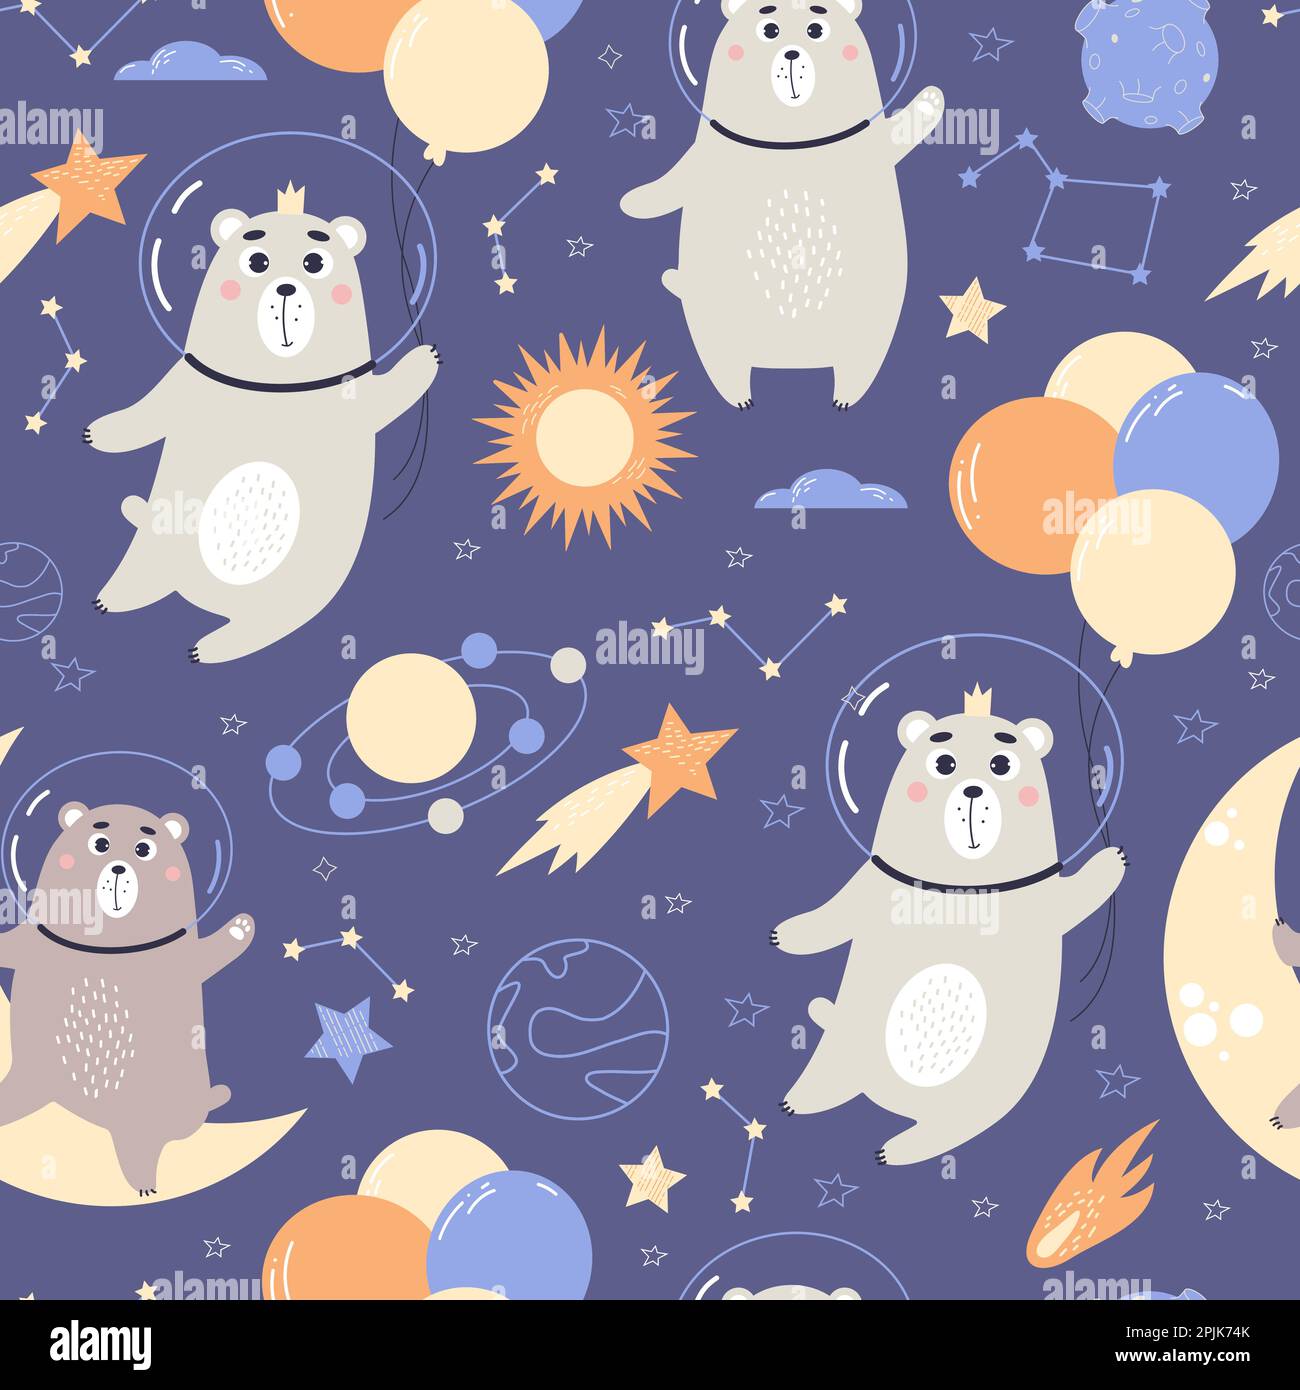 Süßes, nahtloses Muster. Astronautenbären mit Ballons, Sternen und Meteoriten auf dunkelblauem Hintergrund. Vektordarstellung für Kinderkollektion, des Stock Vektor